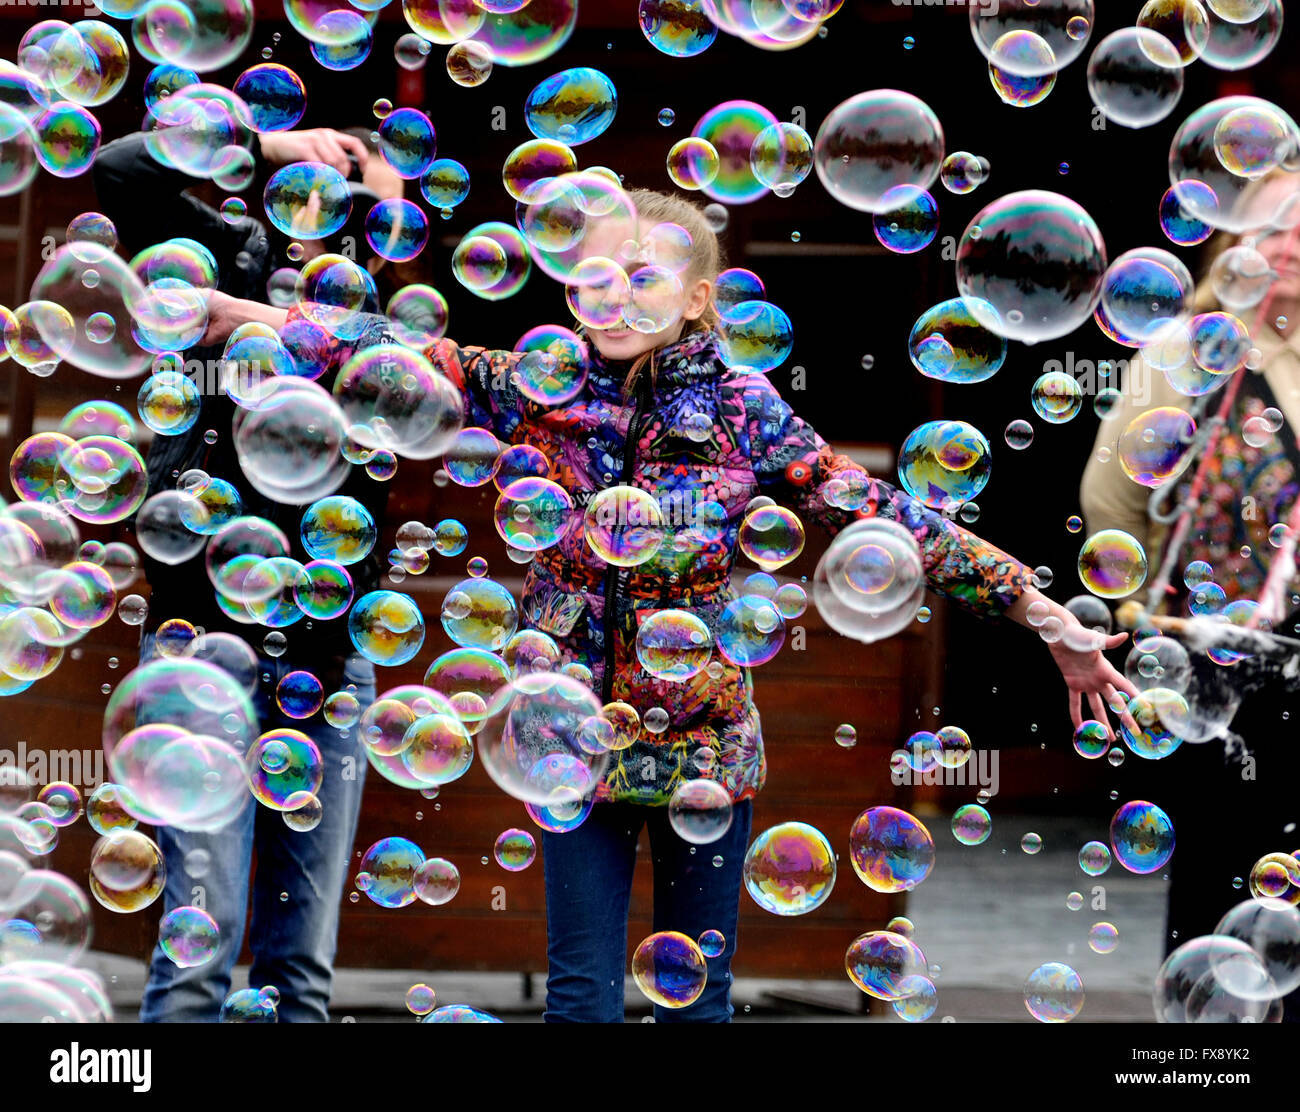 Prag, Tschechische Republik. Junges Mädchen am Altstädter Ring Spielen mit Luftblasen, die durch eine Straße Entertainer gemacht Stockfoto